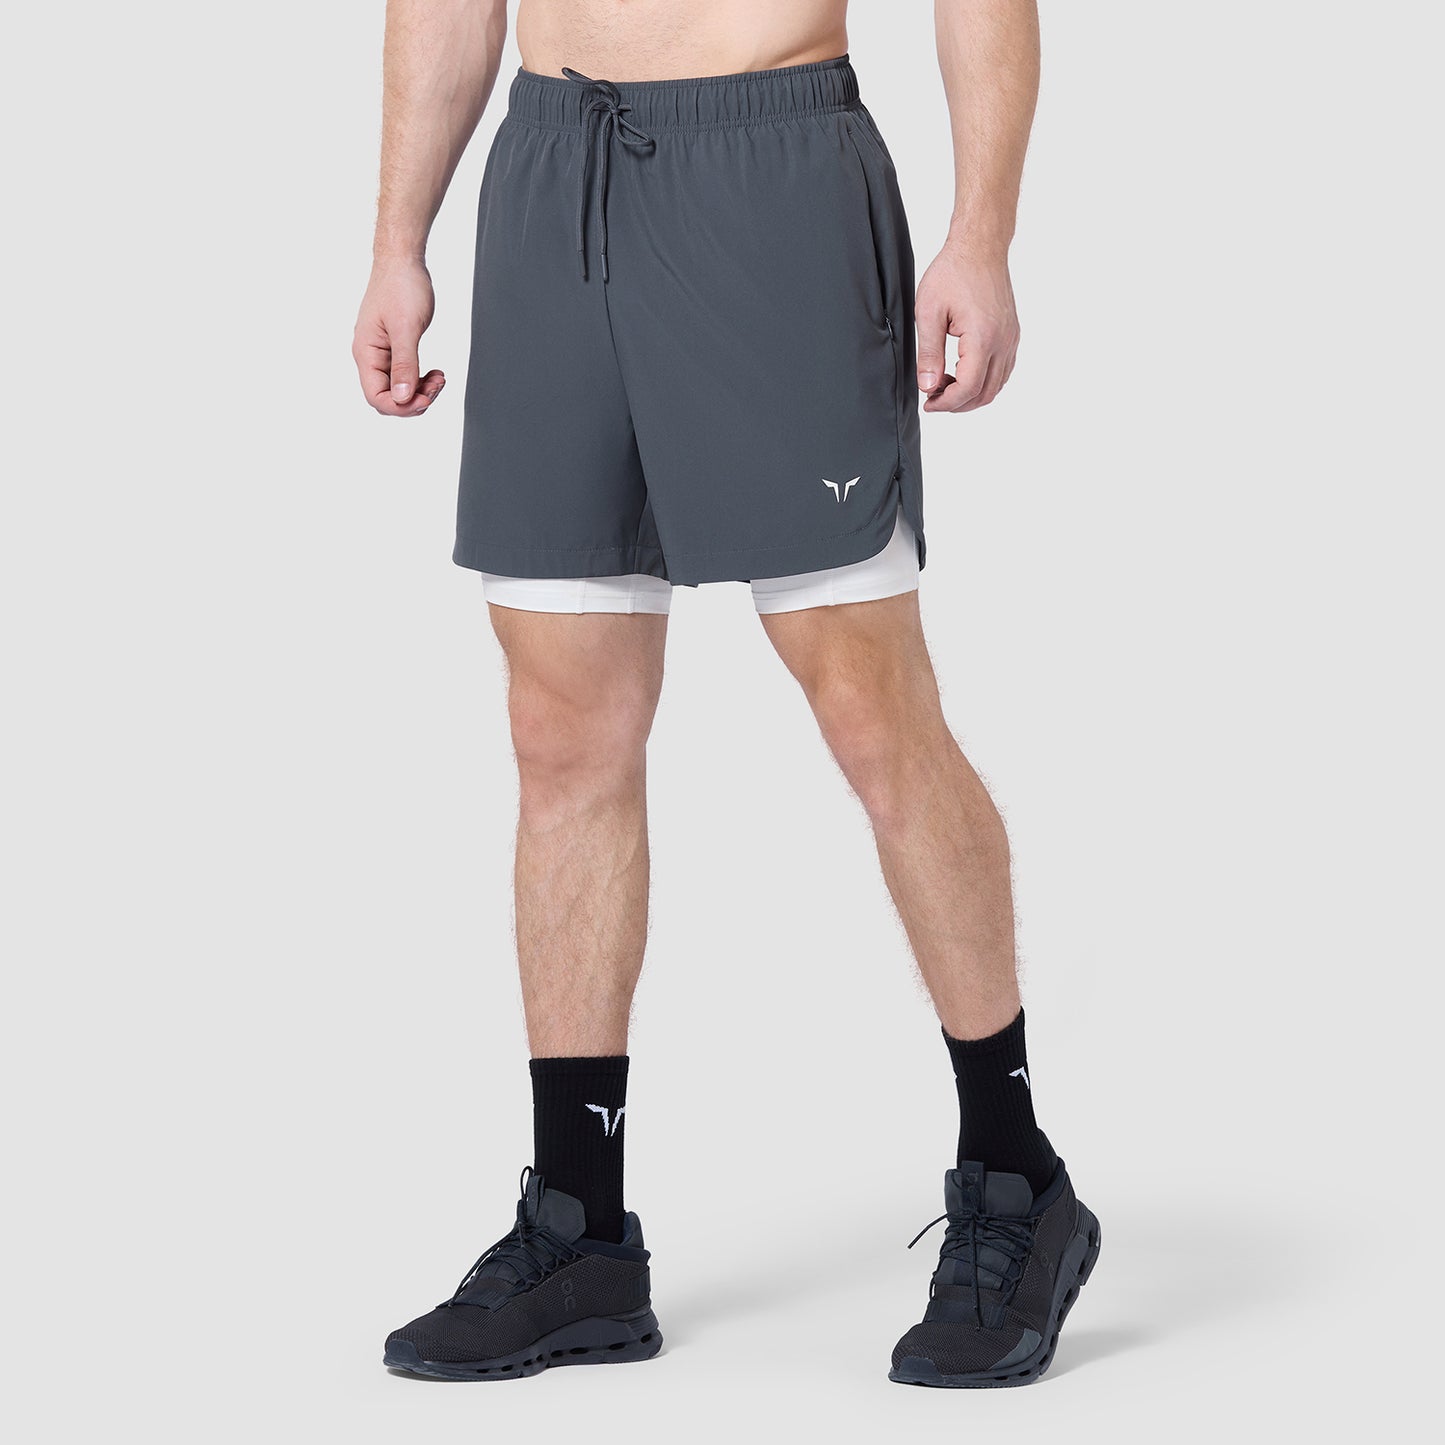 Limitless 2-In-1 7" Shorts - Asphalt